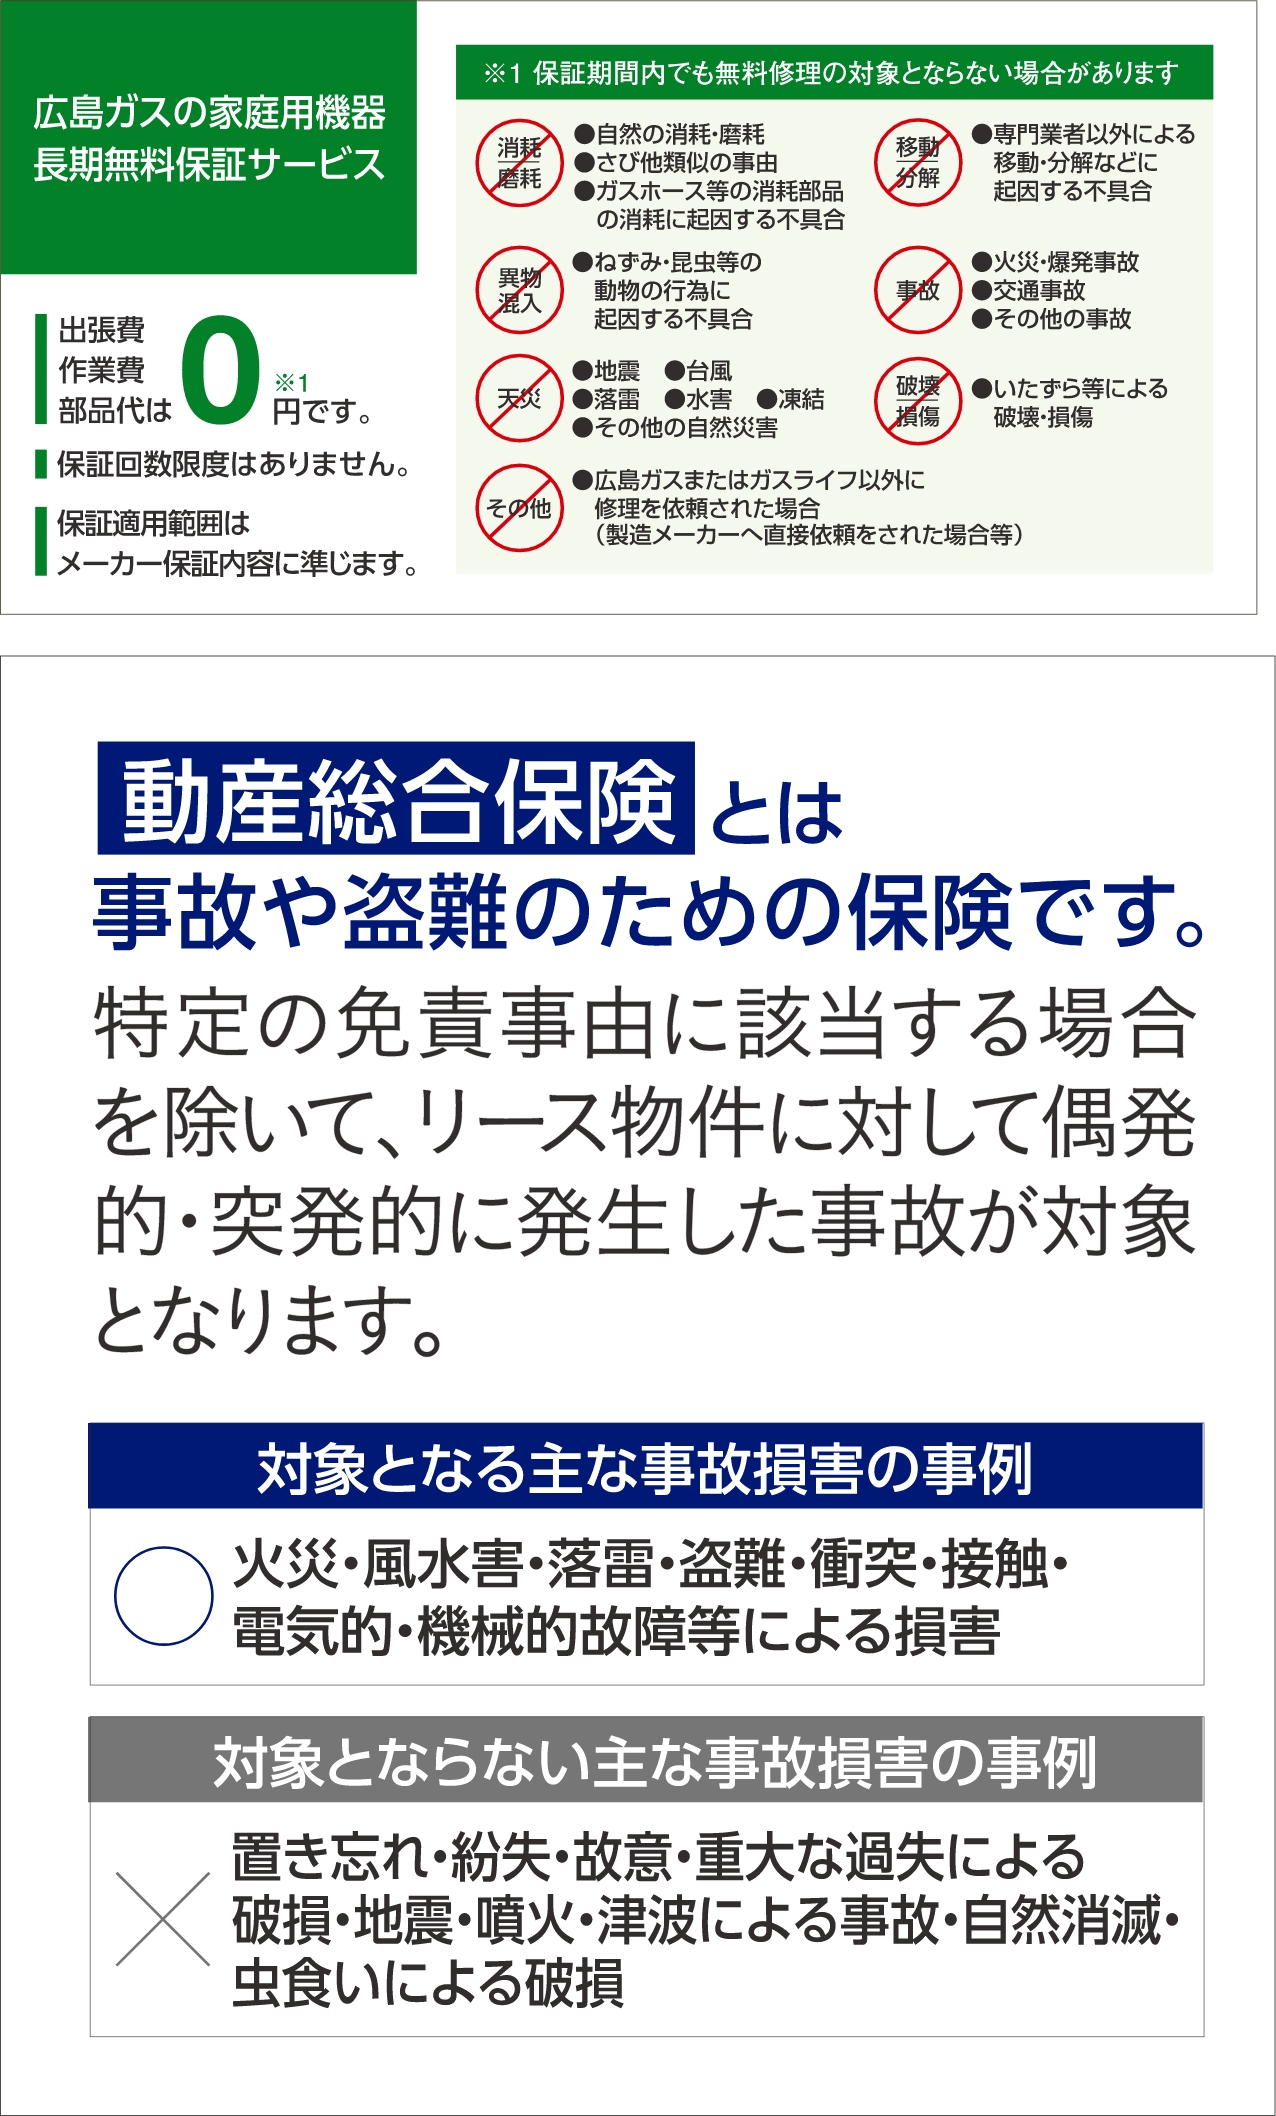 広島ガスの家庭用機器長期無料保証サービス